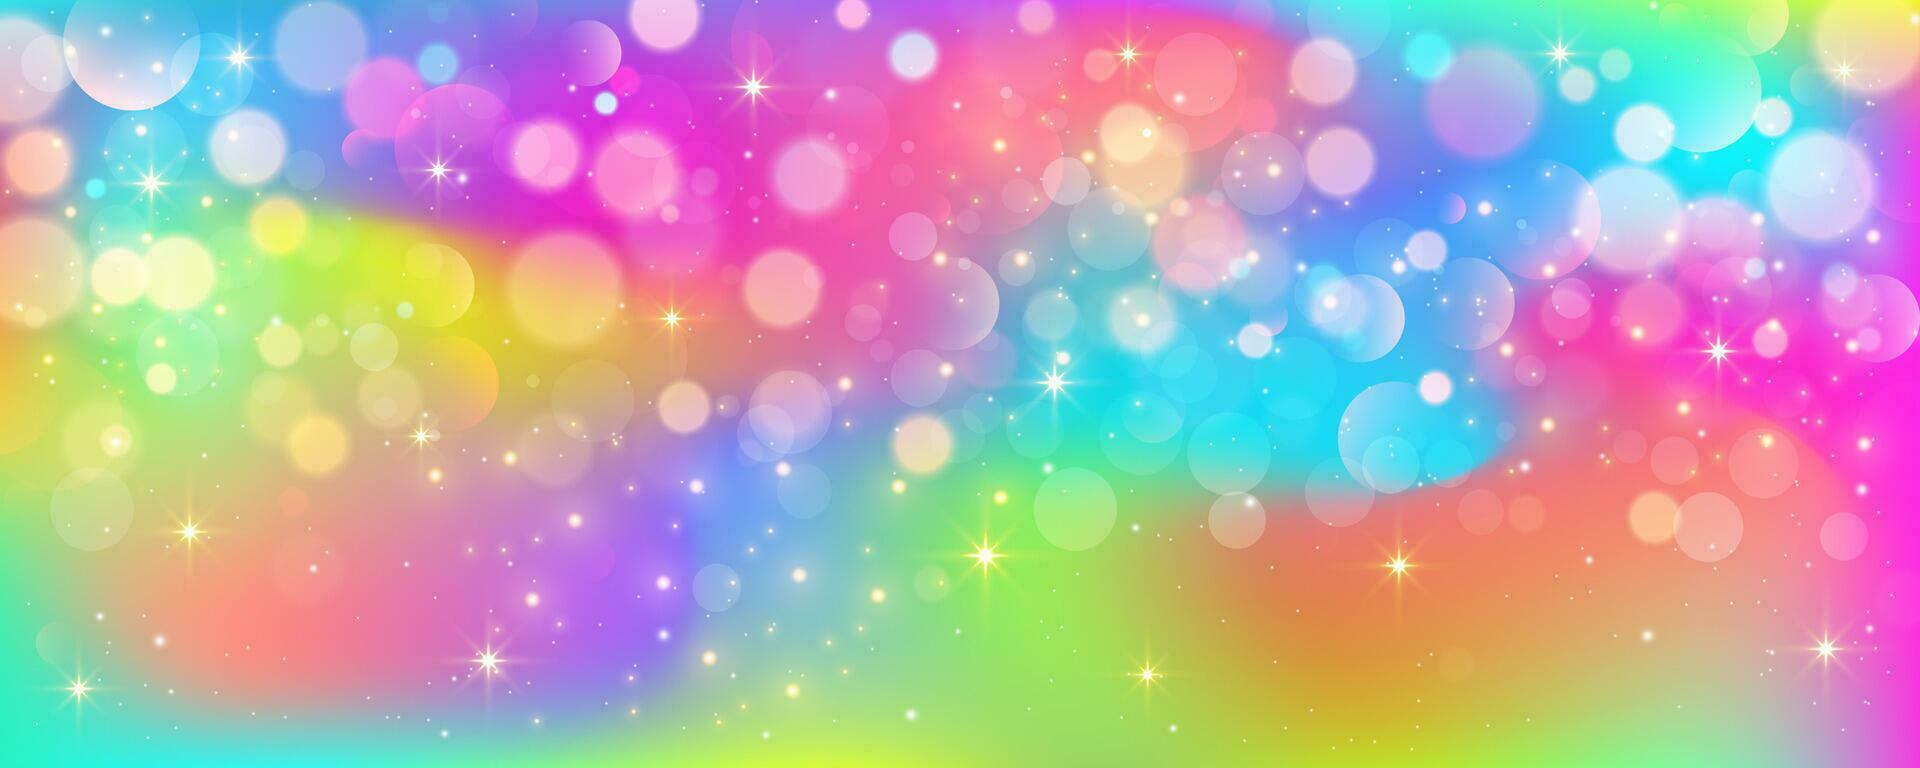 arco Iris unicórnio pastel fundo com brilhar estrelas. Rosa ondulado fantasia céu. holográfico espaço com bokeh. fada iridescente gradiente pano de fundo. vetor